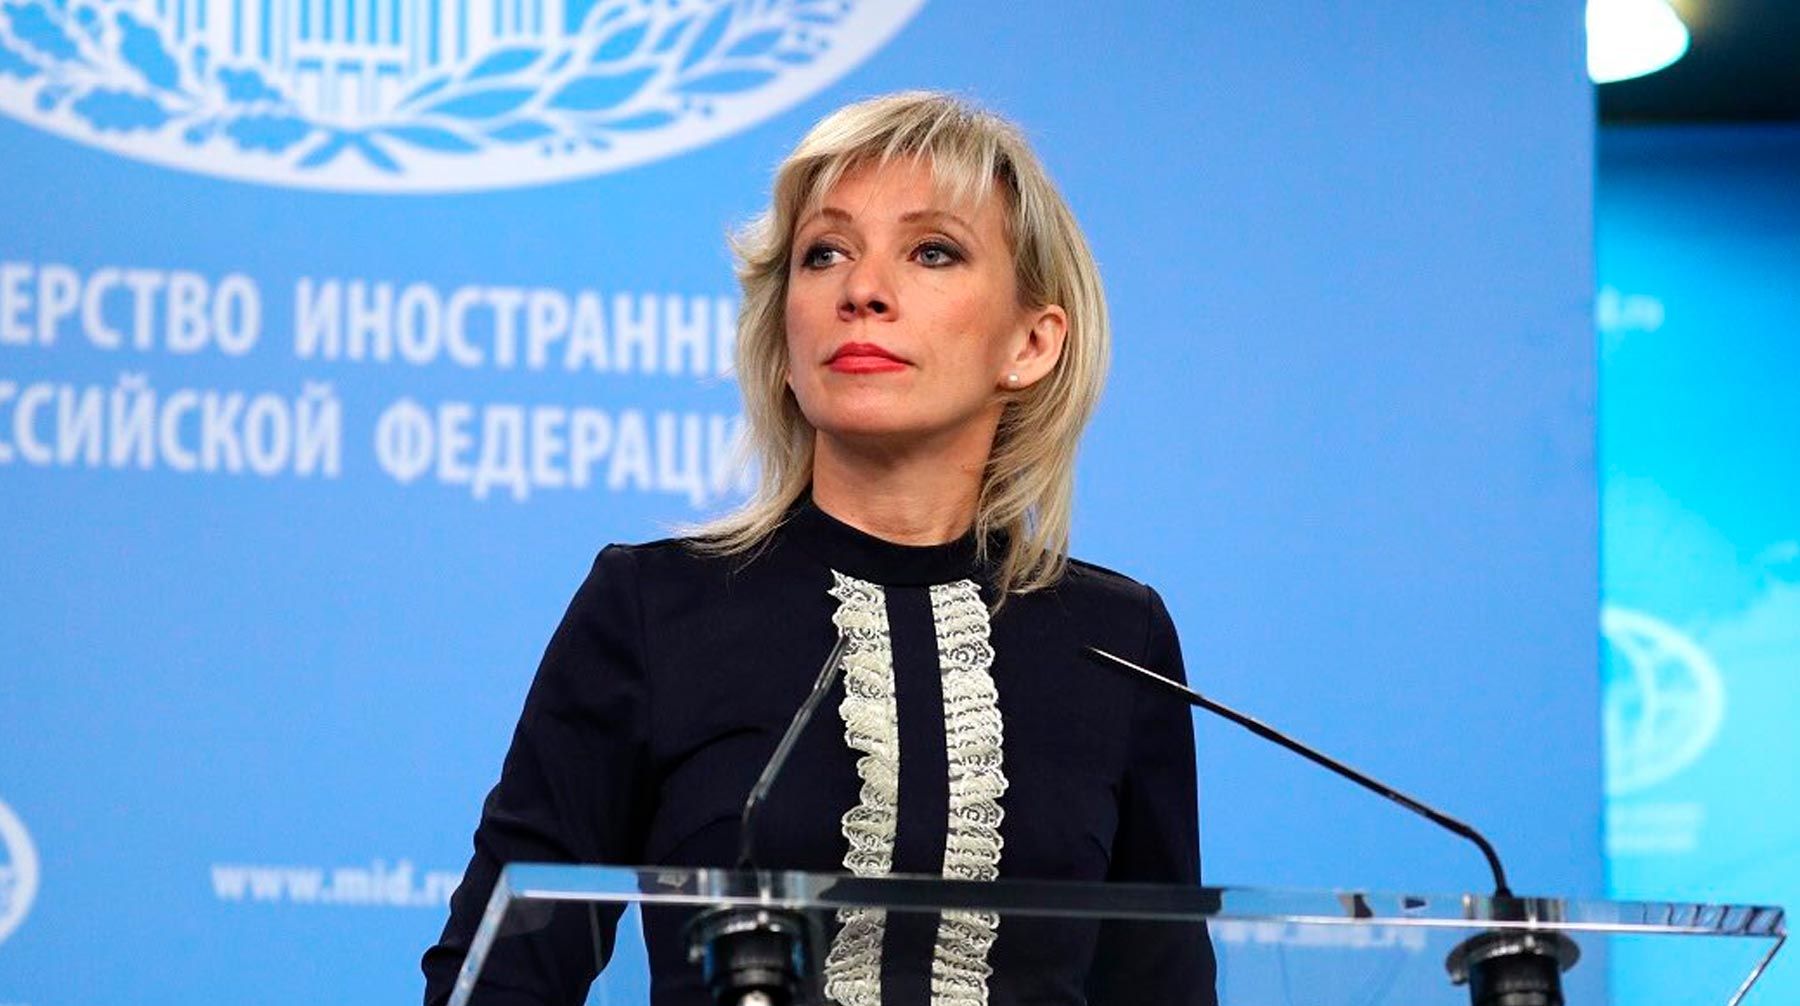 Представитель МИД РФ Мария Захарова сообщила, что инцидент произошел 2 апреля Официальный представитель МИД РФ Мария Захарова